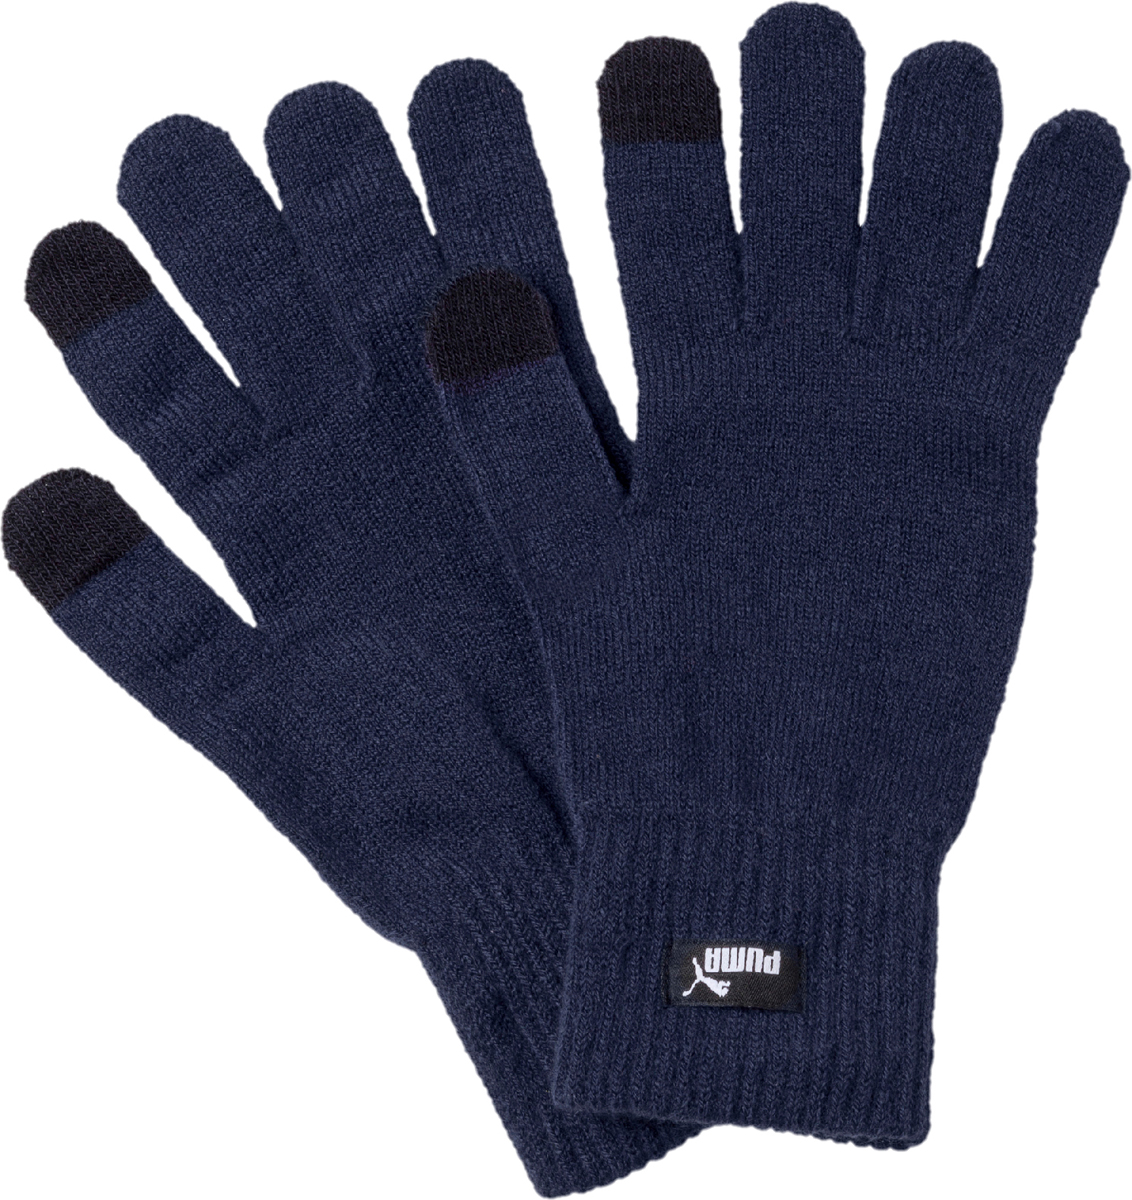 Перчатки Puma Knit Gloves, цвет: темно-синий. 04131605. Размер L/XL (8,5)